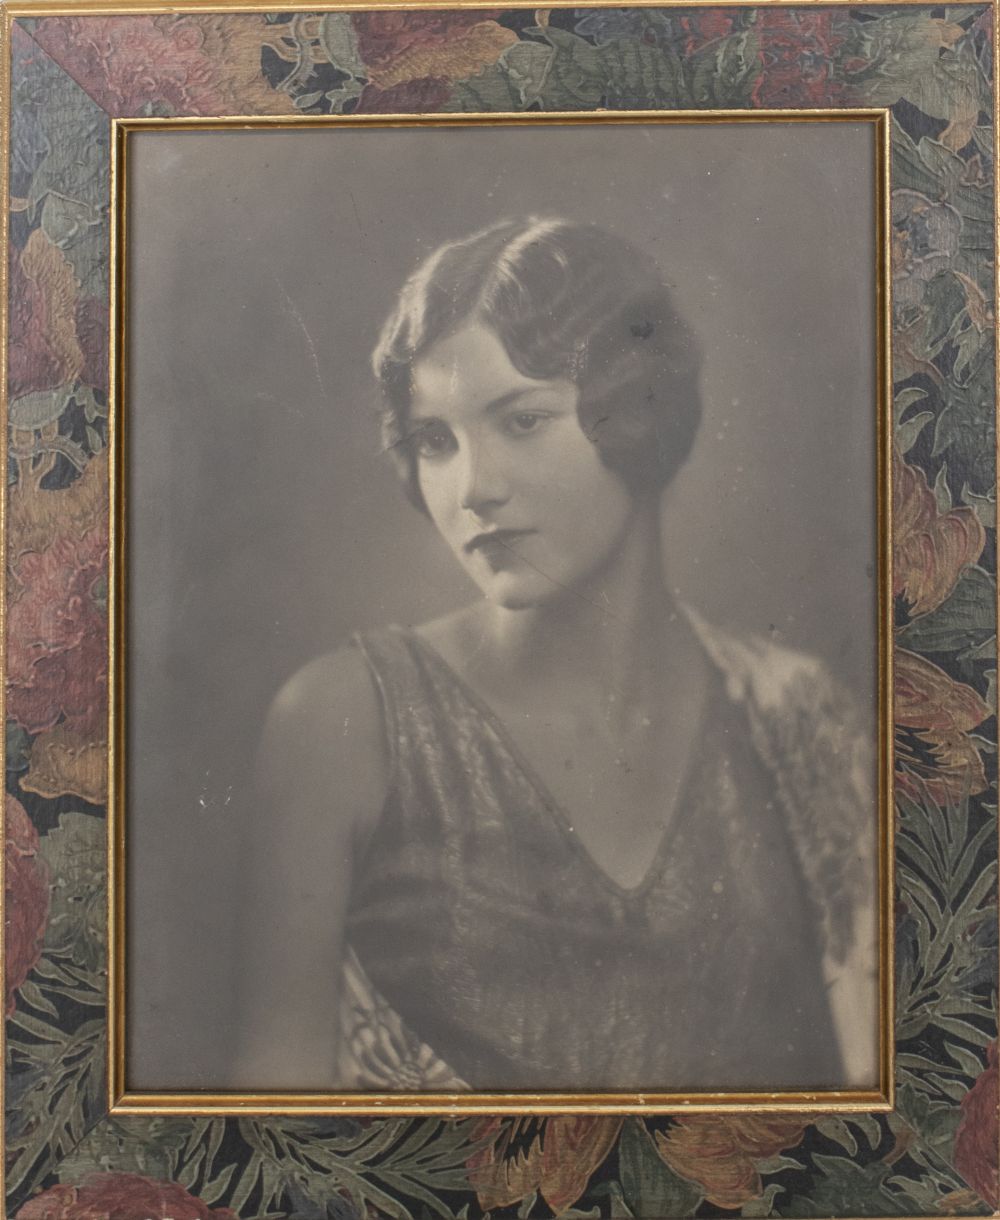 1920S PORTRAIT OF A WOMAN 1920s 3c5647